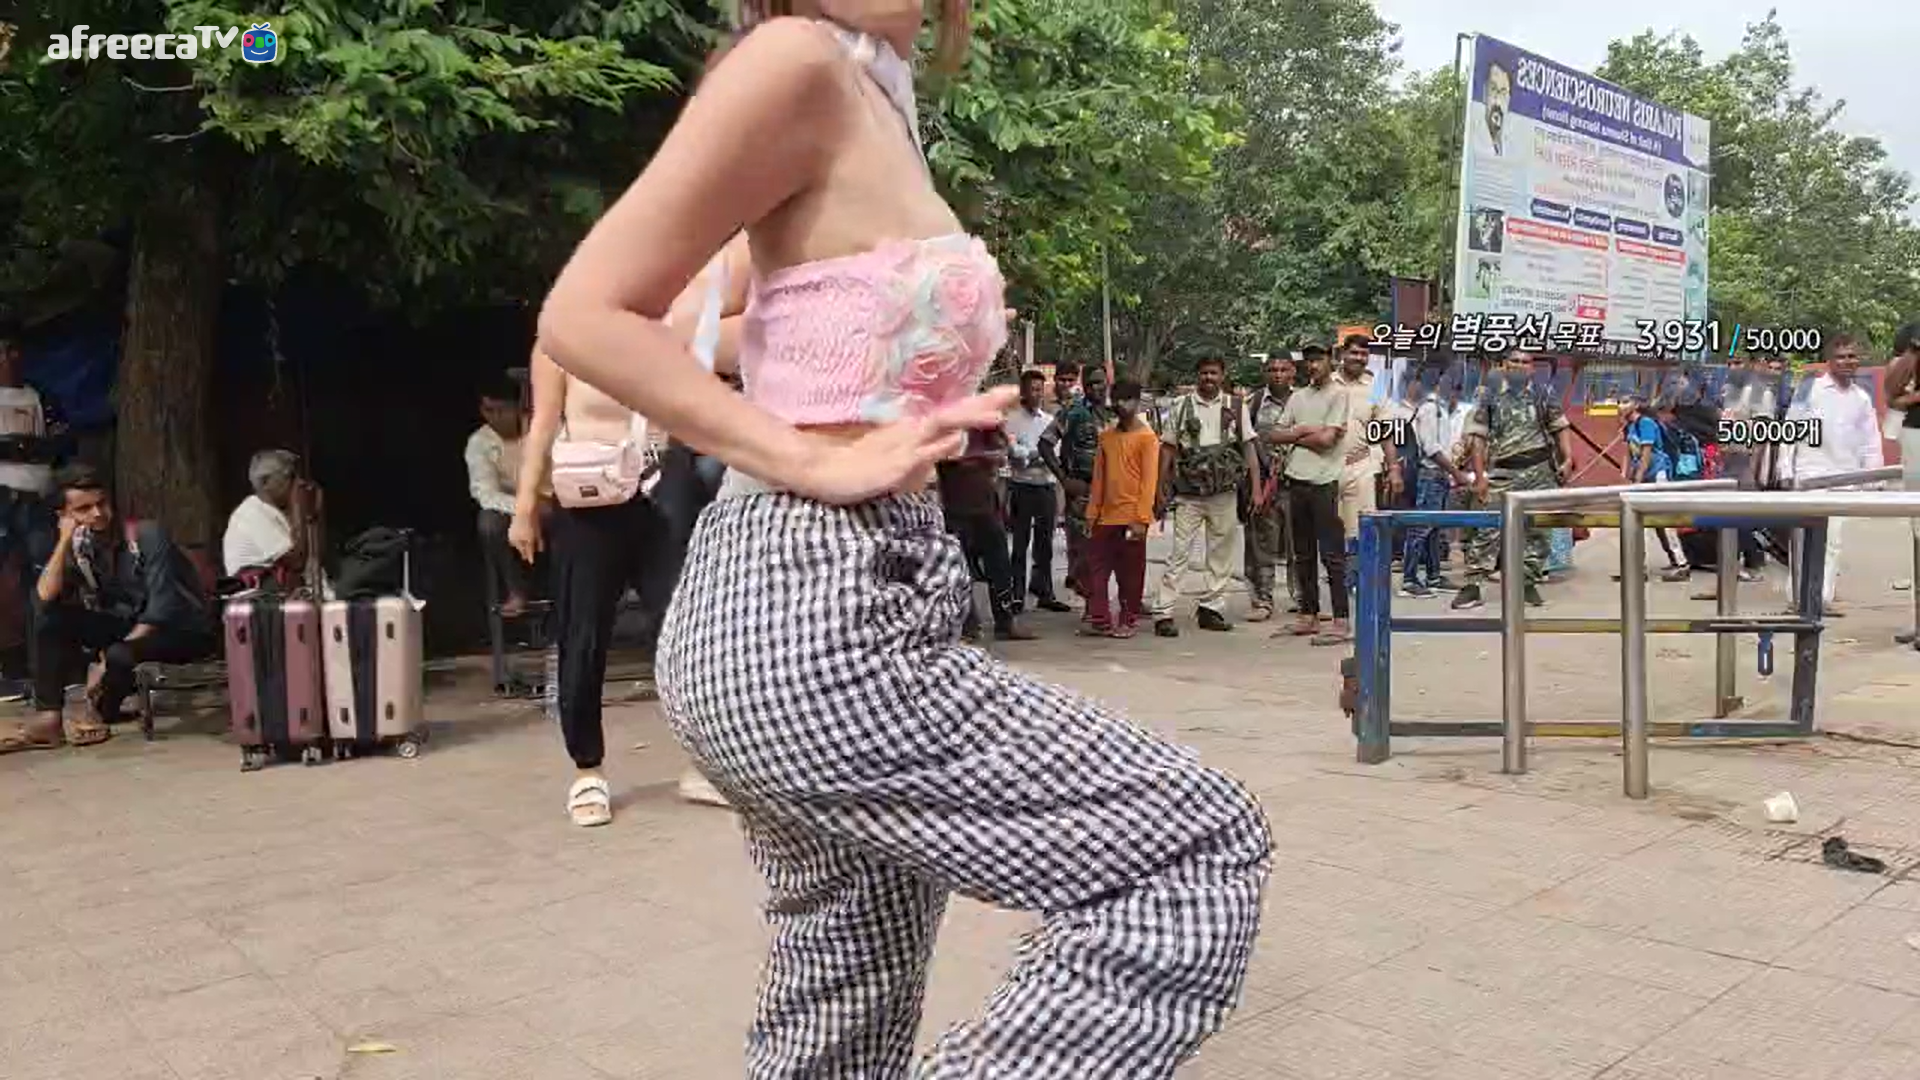 아프리카TV 여성 BJ 2명이 28일 인도 여행 중 생방송에서 노출이 있는 옷을 입고 길거리 댄스 콘텐츠를 진행해 온라인상에서 논란이 됐다. 아프리카TV 방송화면 캡처